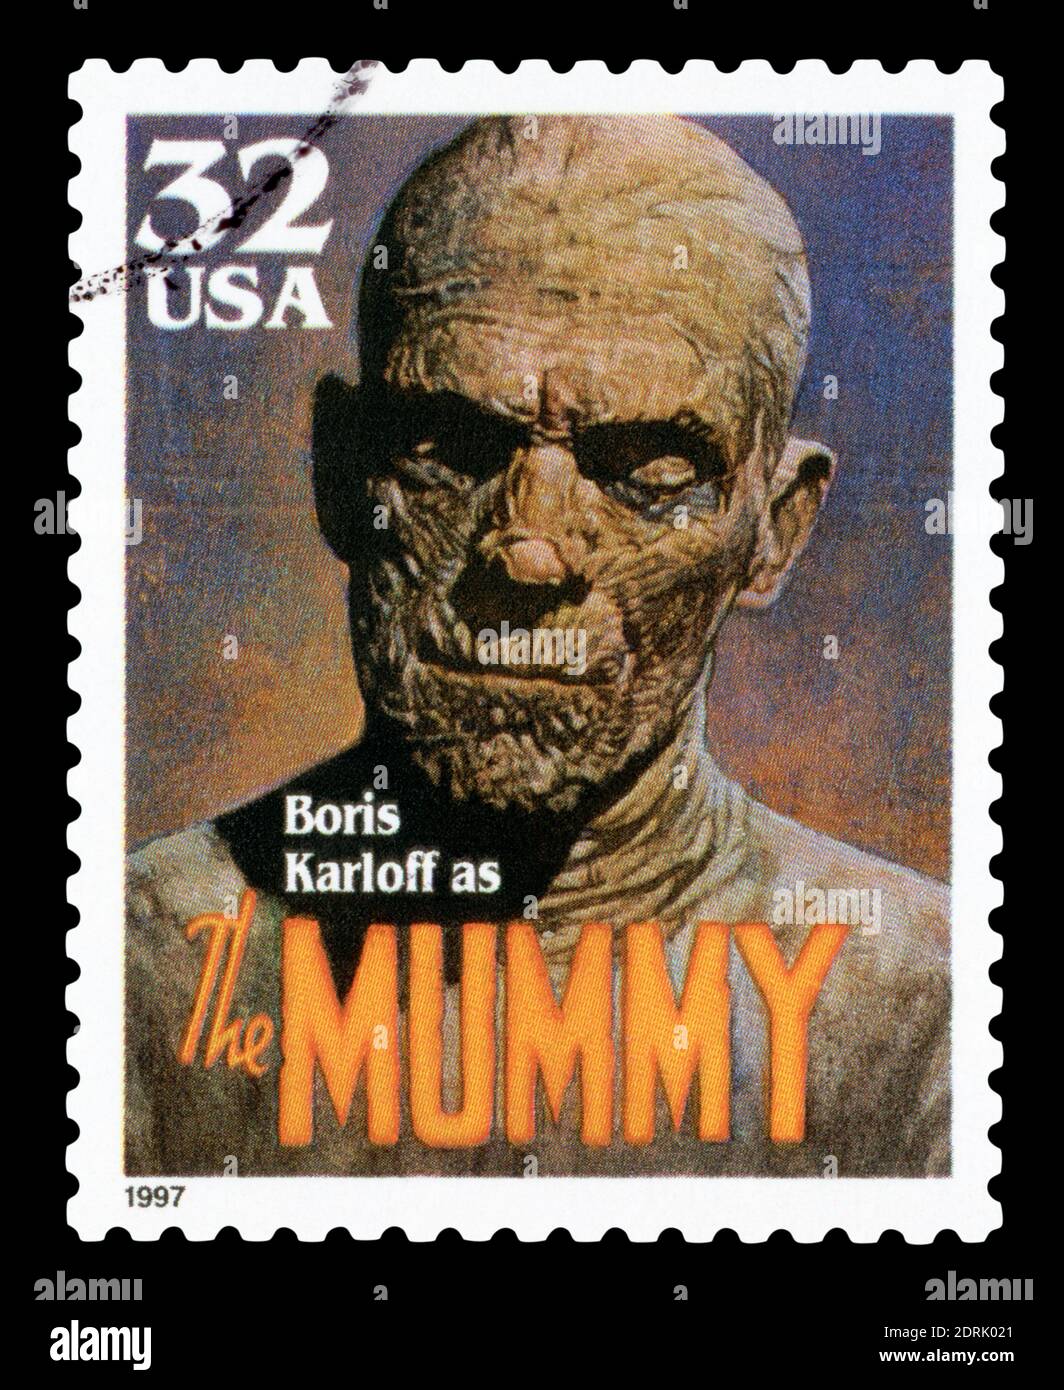 VEREINIGTE STAATEN von AMERIKA - UM 1997: Eine in den USA gedruckte Briefmarke zeigt das Porträt von William Henry Pratt Boris Karloff als Mumie, um 1997. Stockfoto